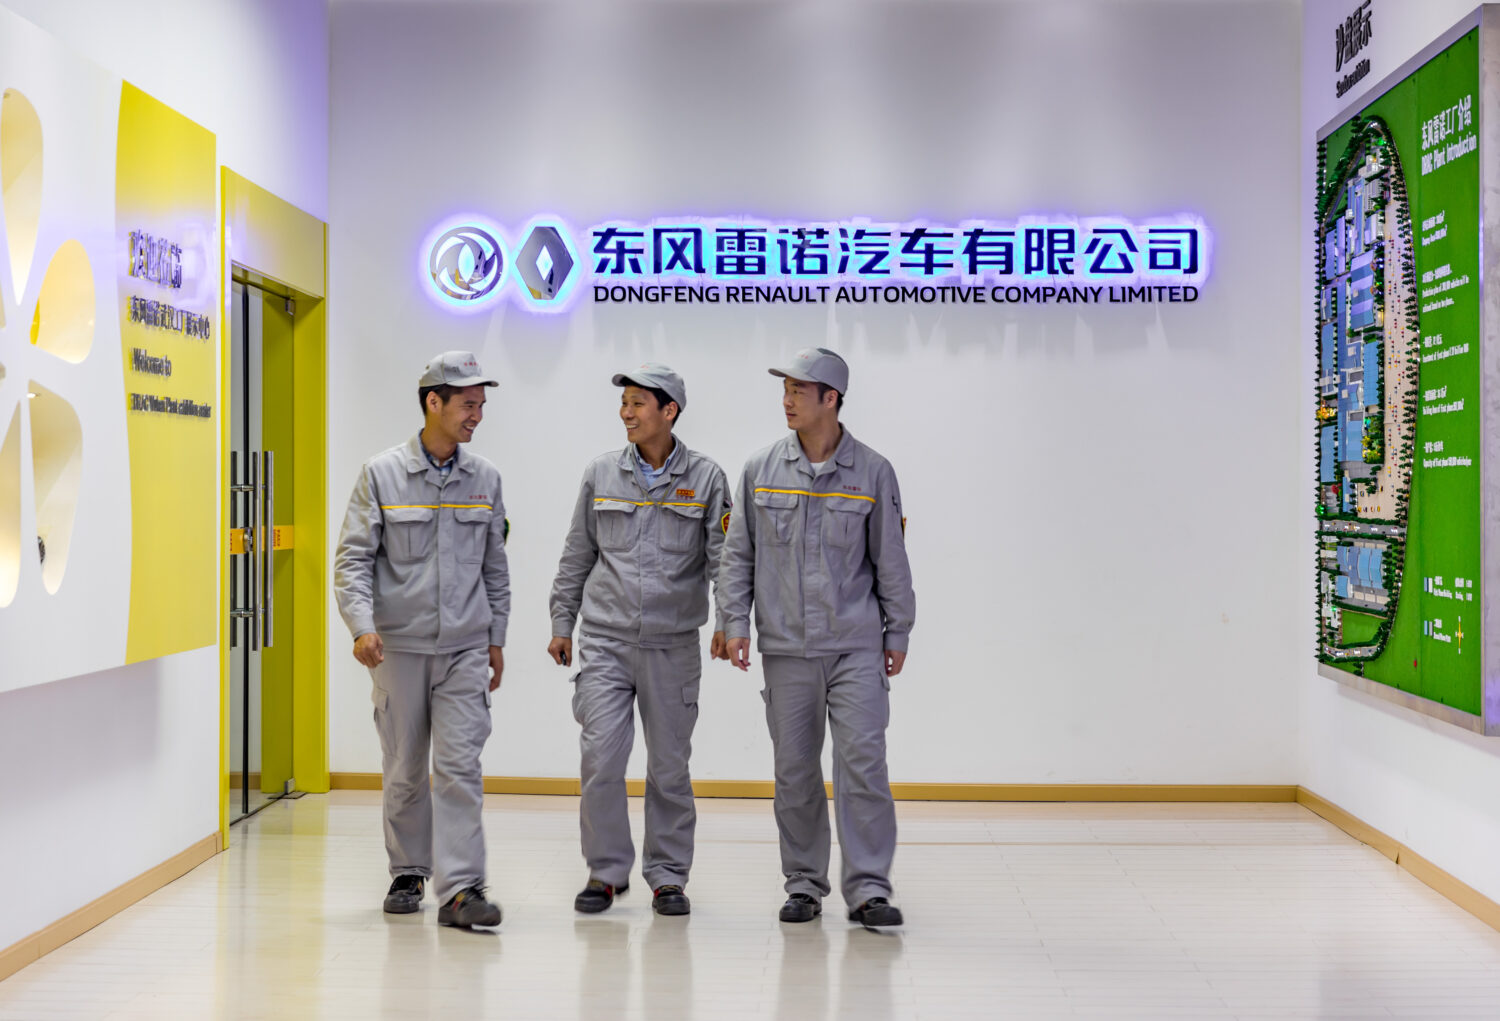 2019 - DRAC Wuhan Plant, China